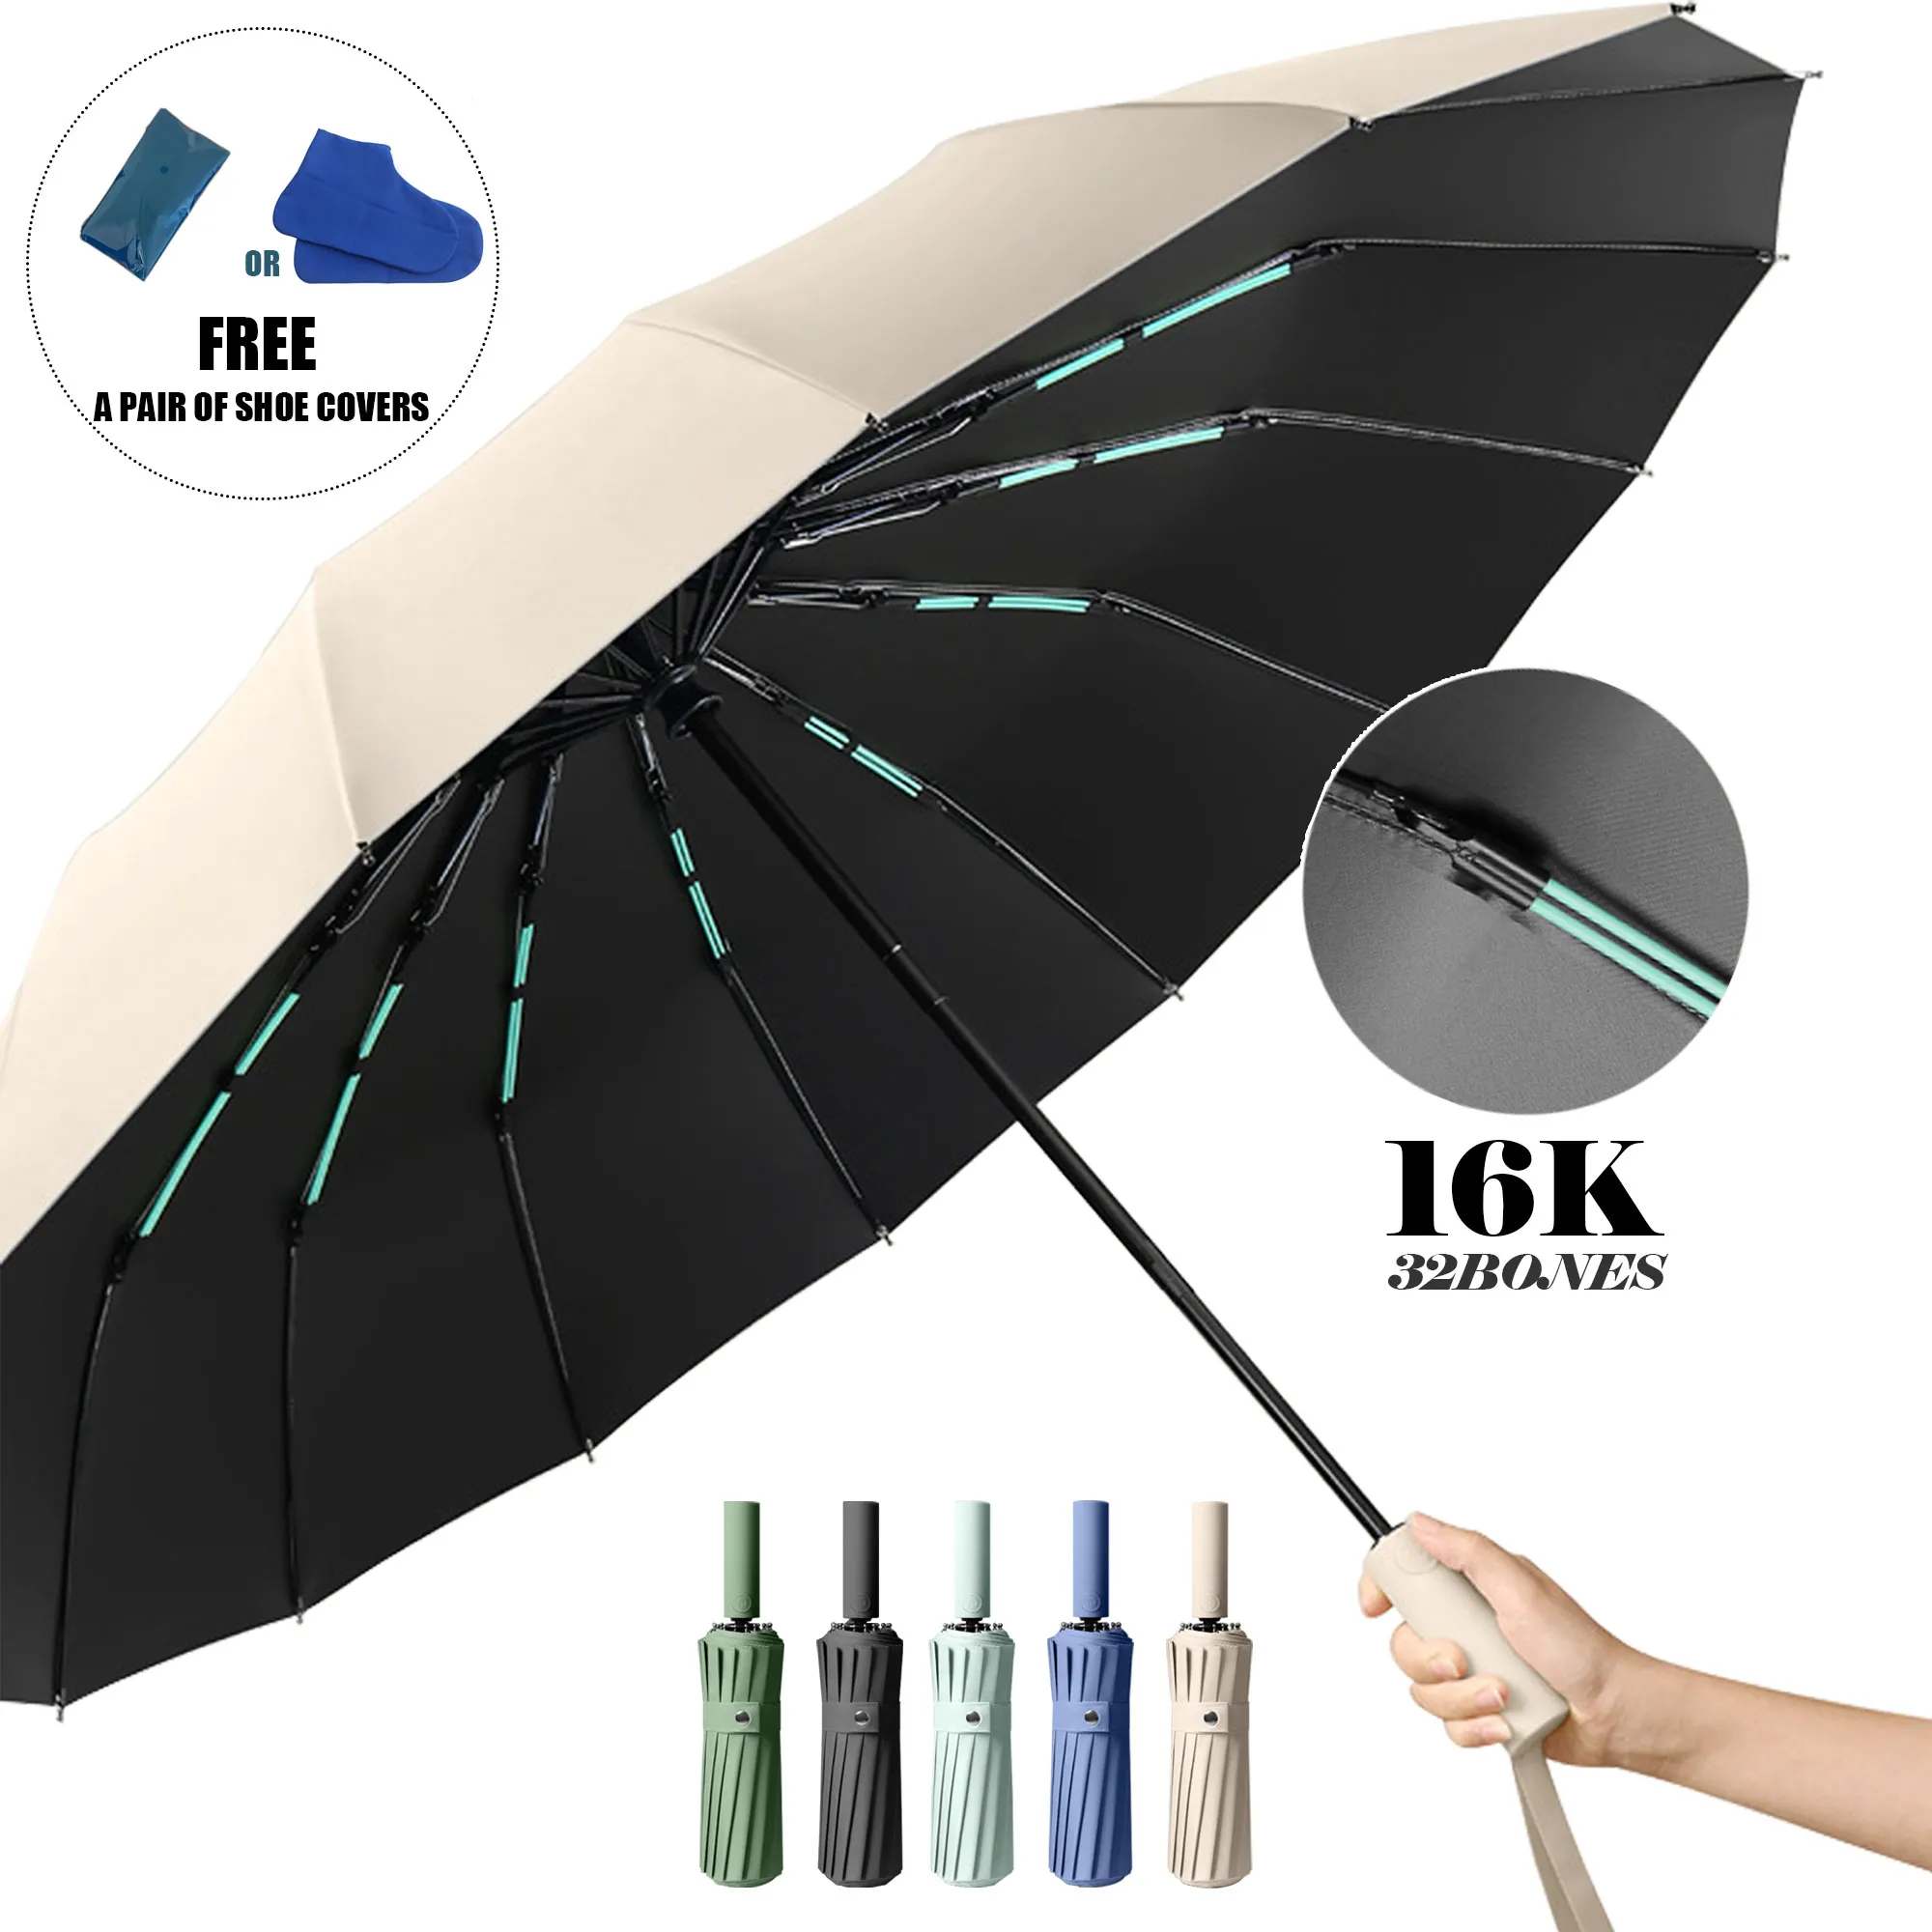 럭셔리 비즈니스를 위한 자동 접이식 더블 본즈 대형 우산!